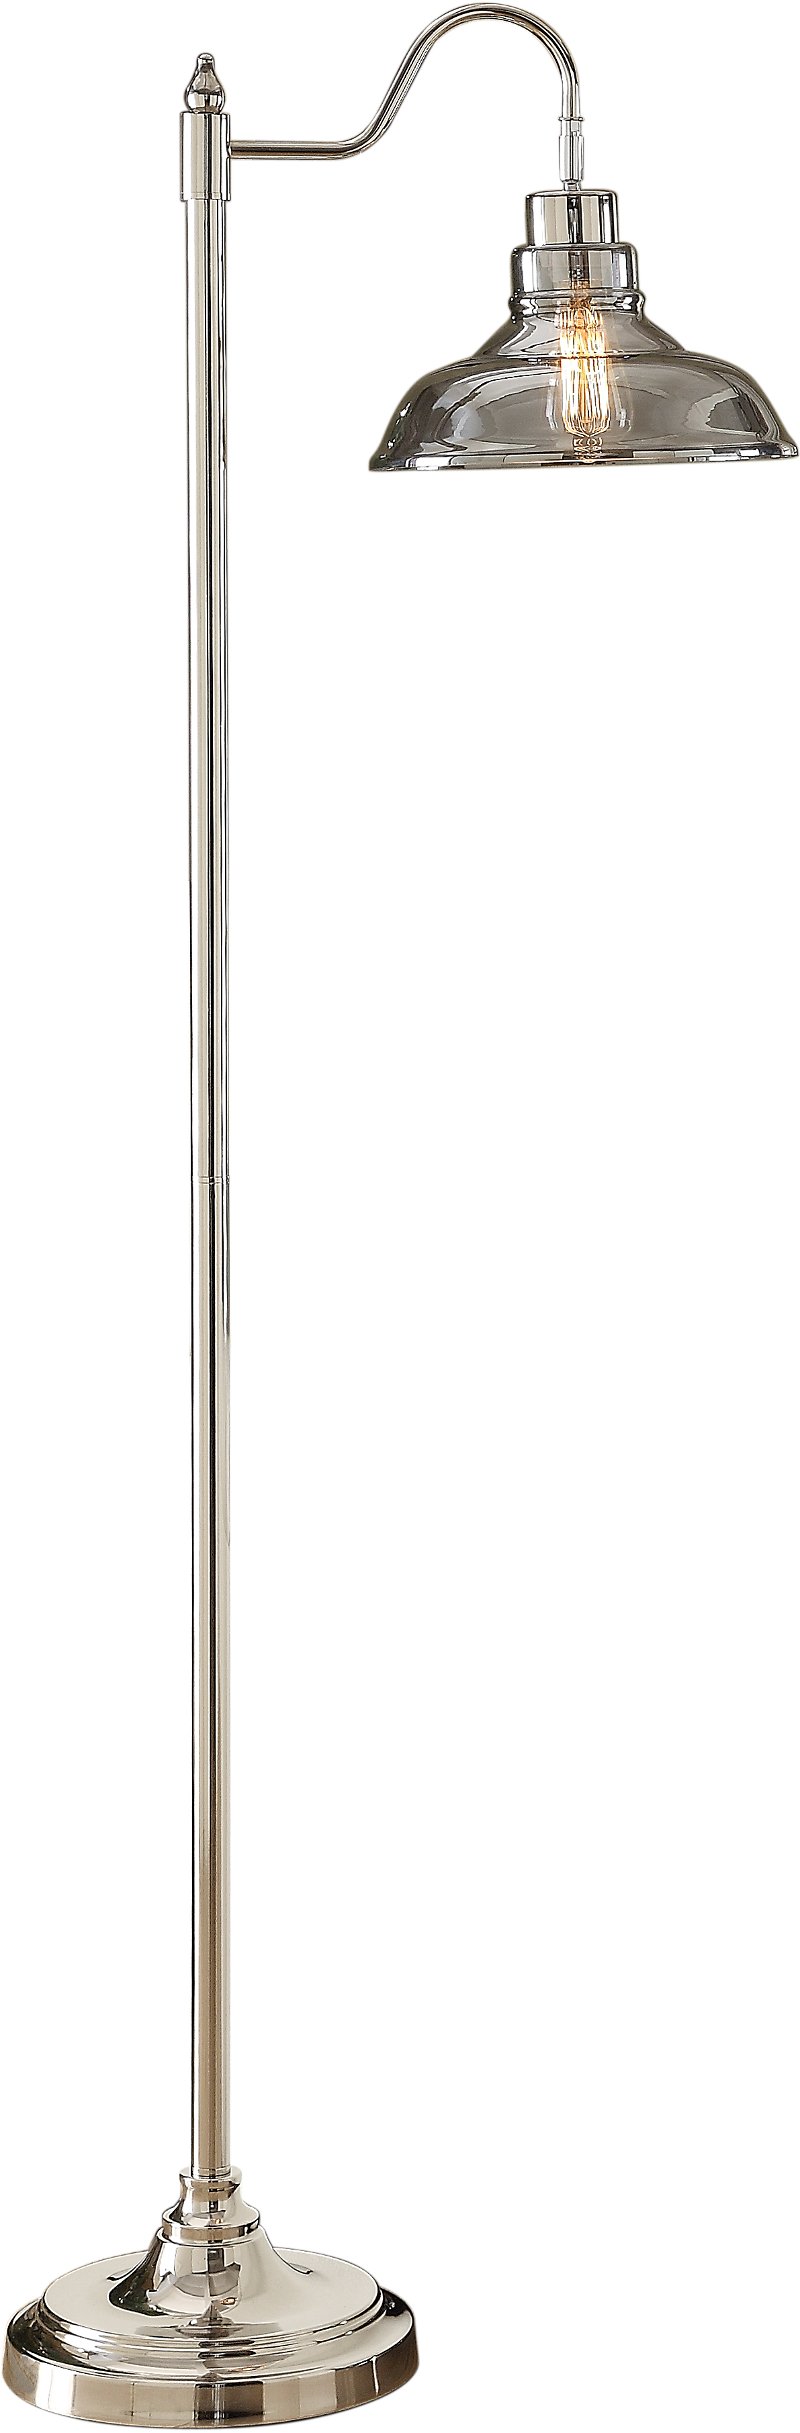 Nickel Floor Lamp With Smoke Glass, Nickel Floor Lamp